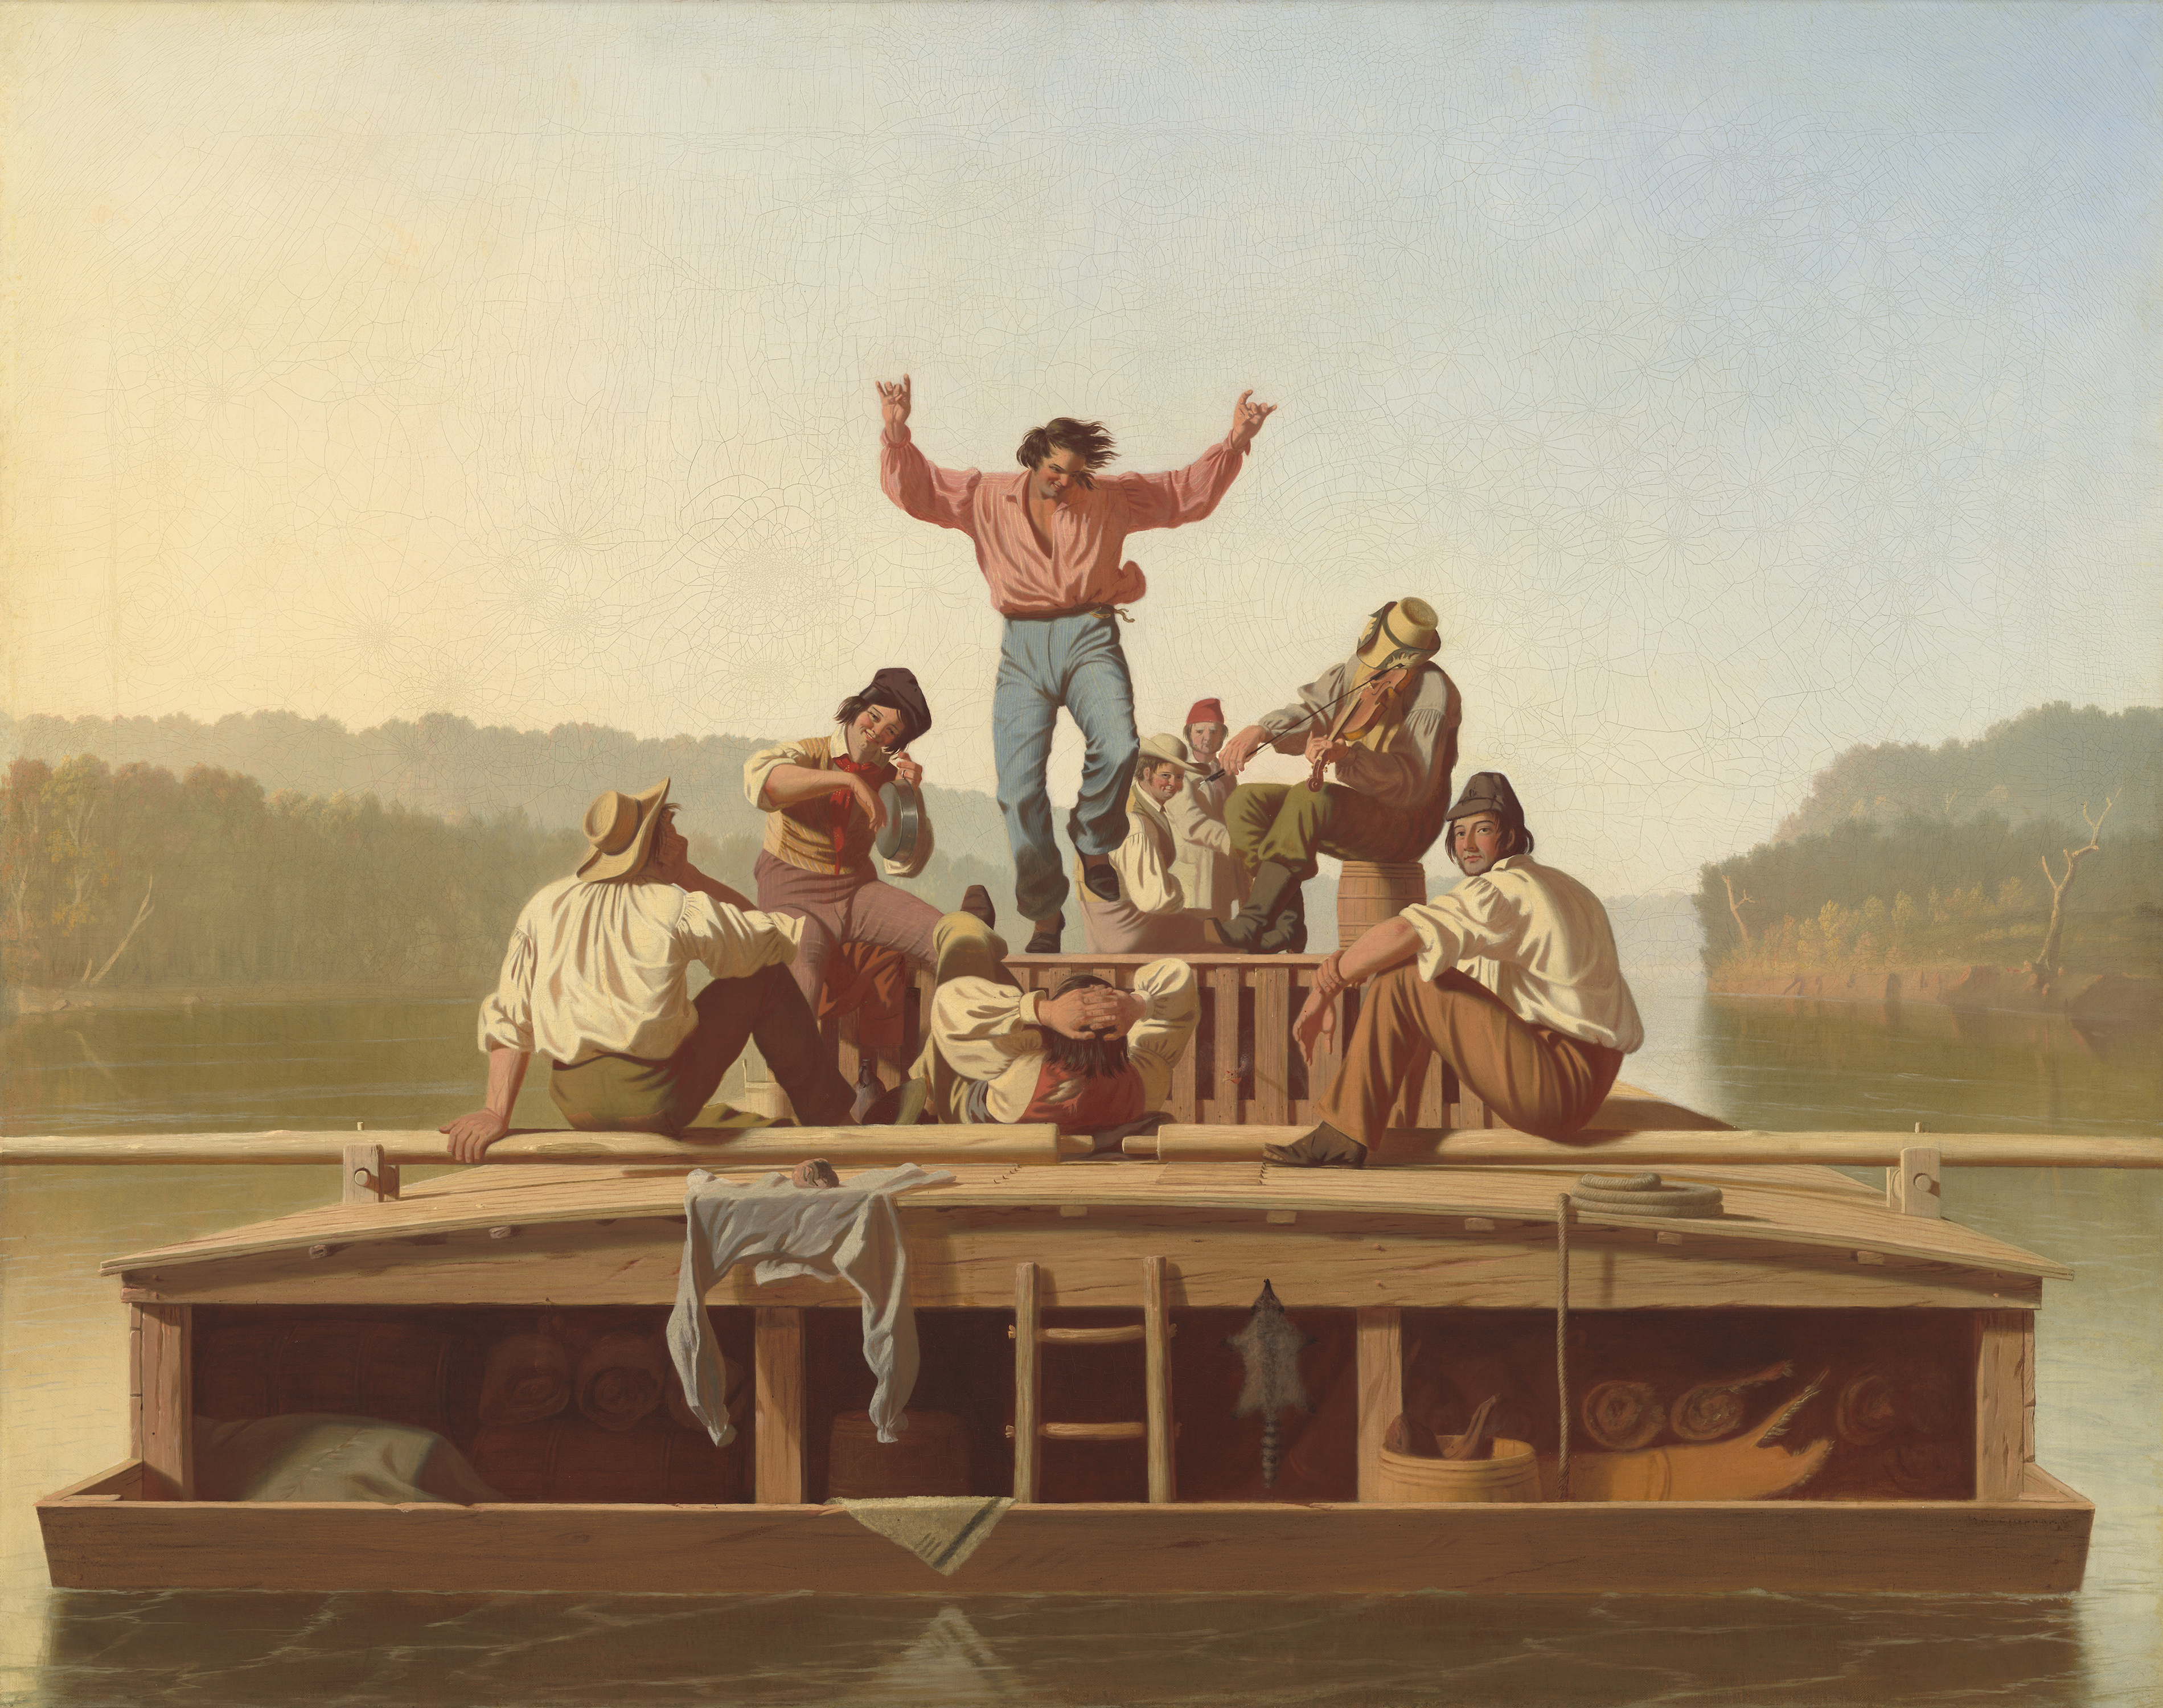 De vrolijke bemanning van de platbodem by George Caleb Bingham - 1846 